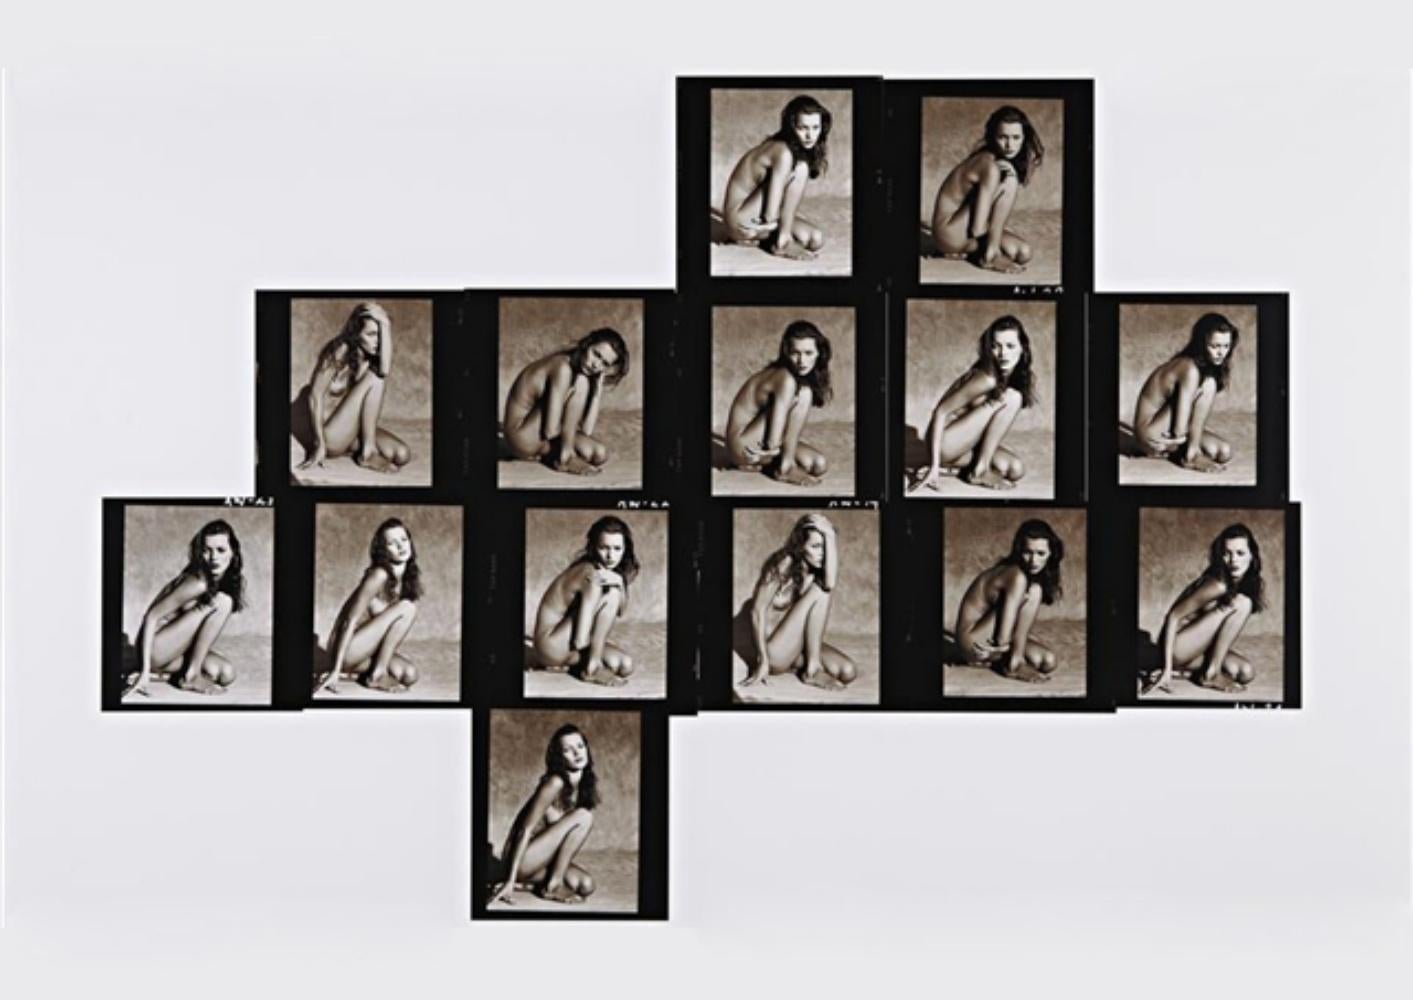 Kate Moss Kontaktblatt (horizontal), Marrakesch Albert Watson, Nackt, Frau, BW